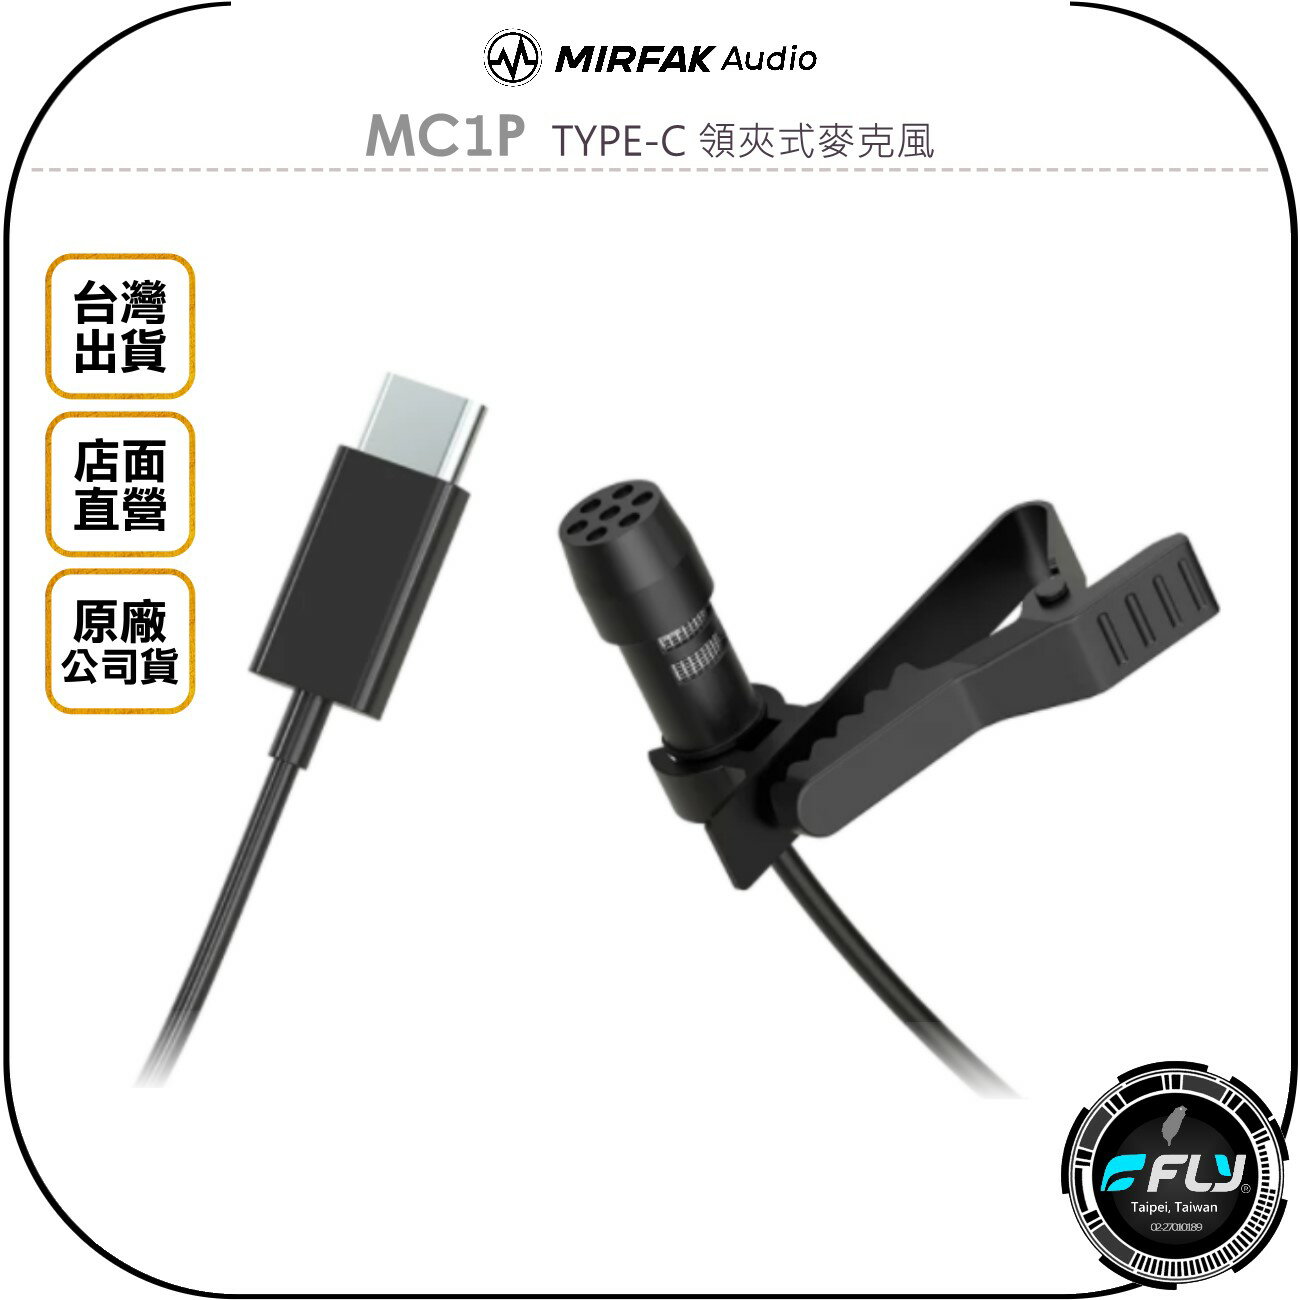 《飛翔無線3C》MIRFAK Audio 魔品 MC1P TYPE-C 領夾式麥克風◉公司貨◉適用 安卓手機 平板